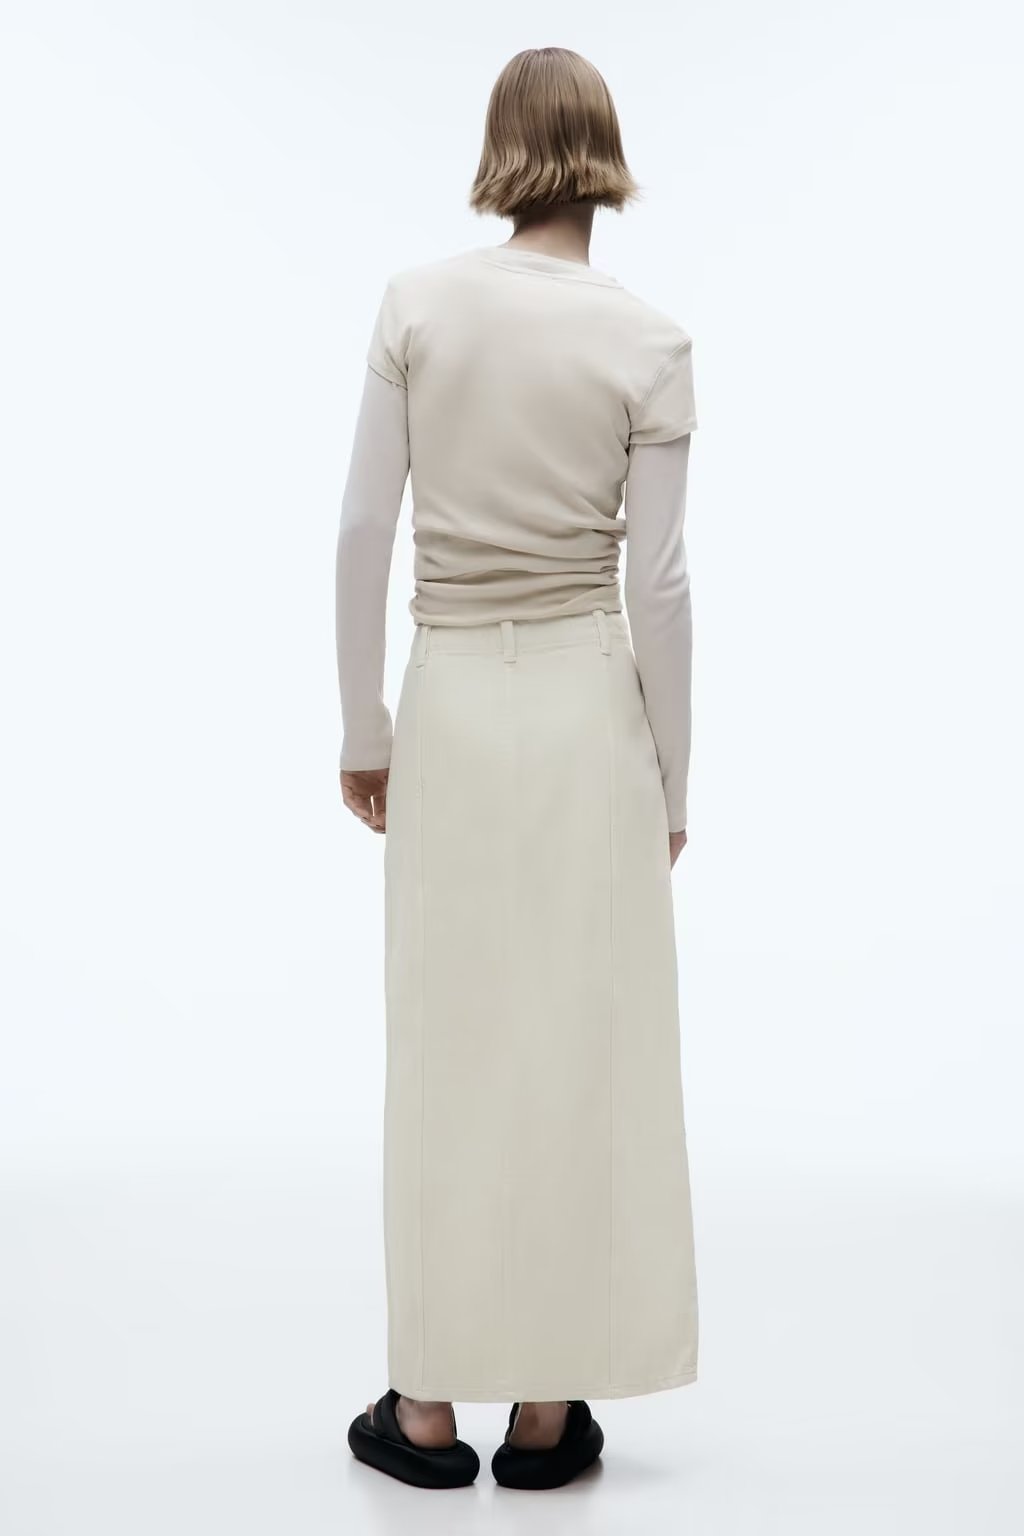 Women Patchwork Design Skirt Casual Slit A line High Waist Midi Dress